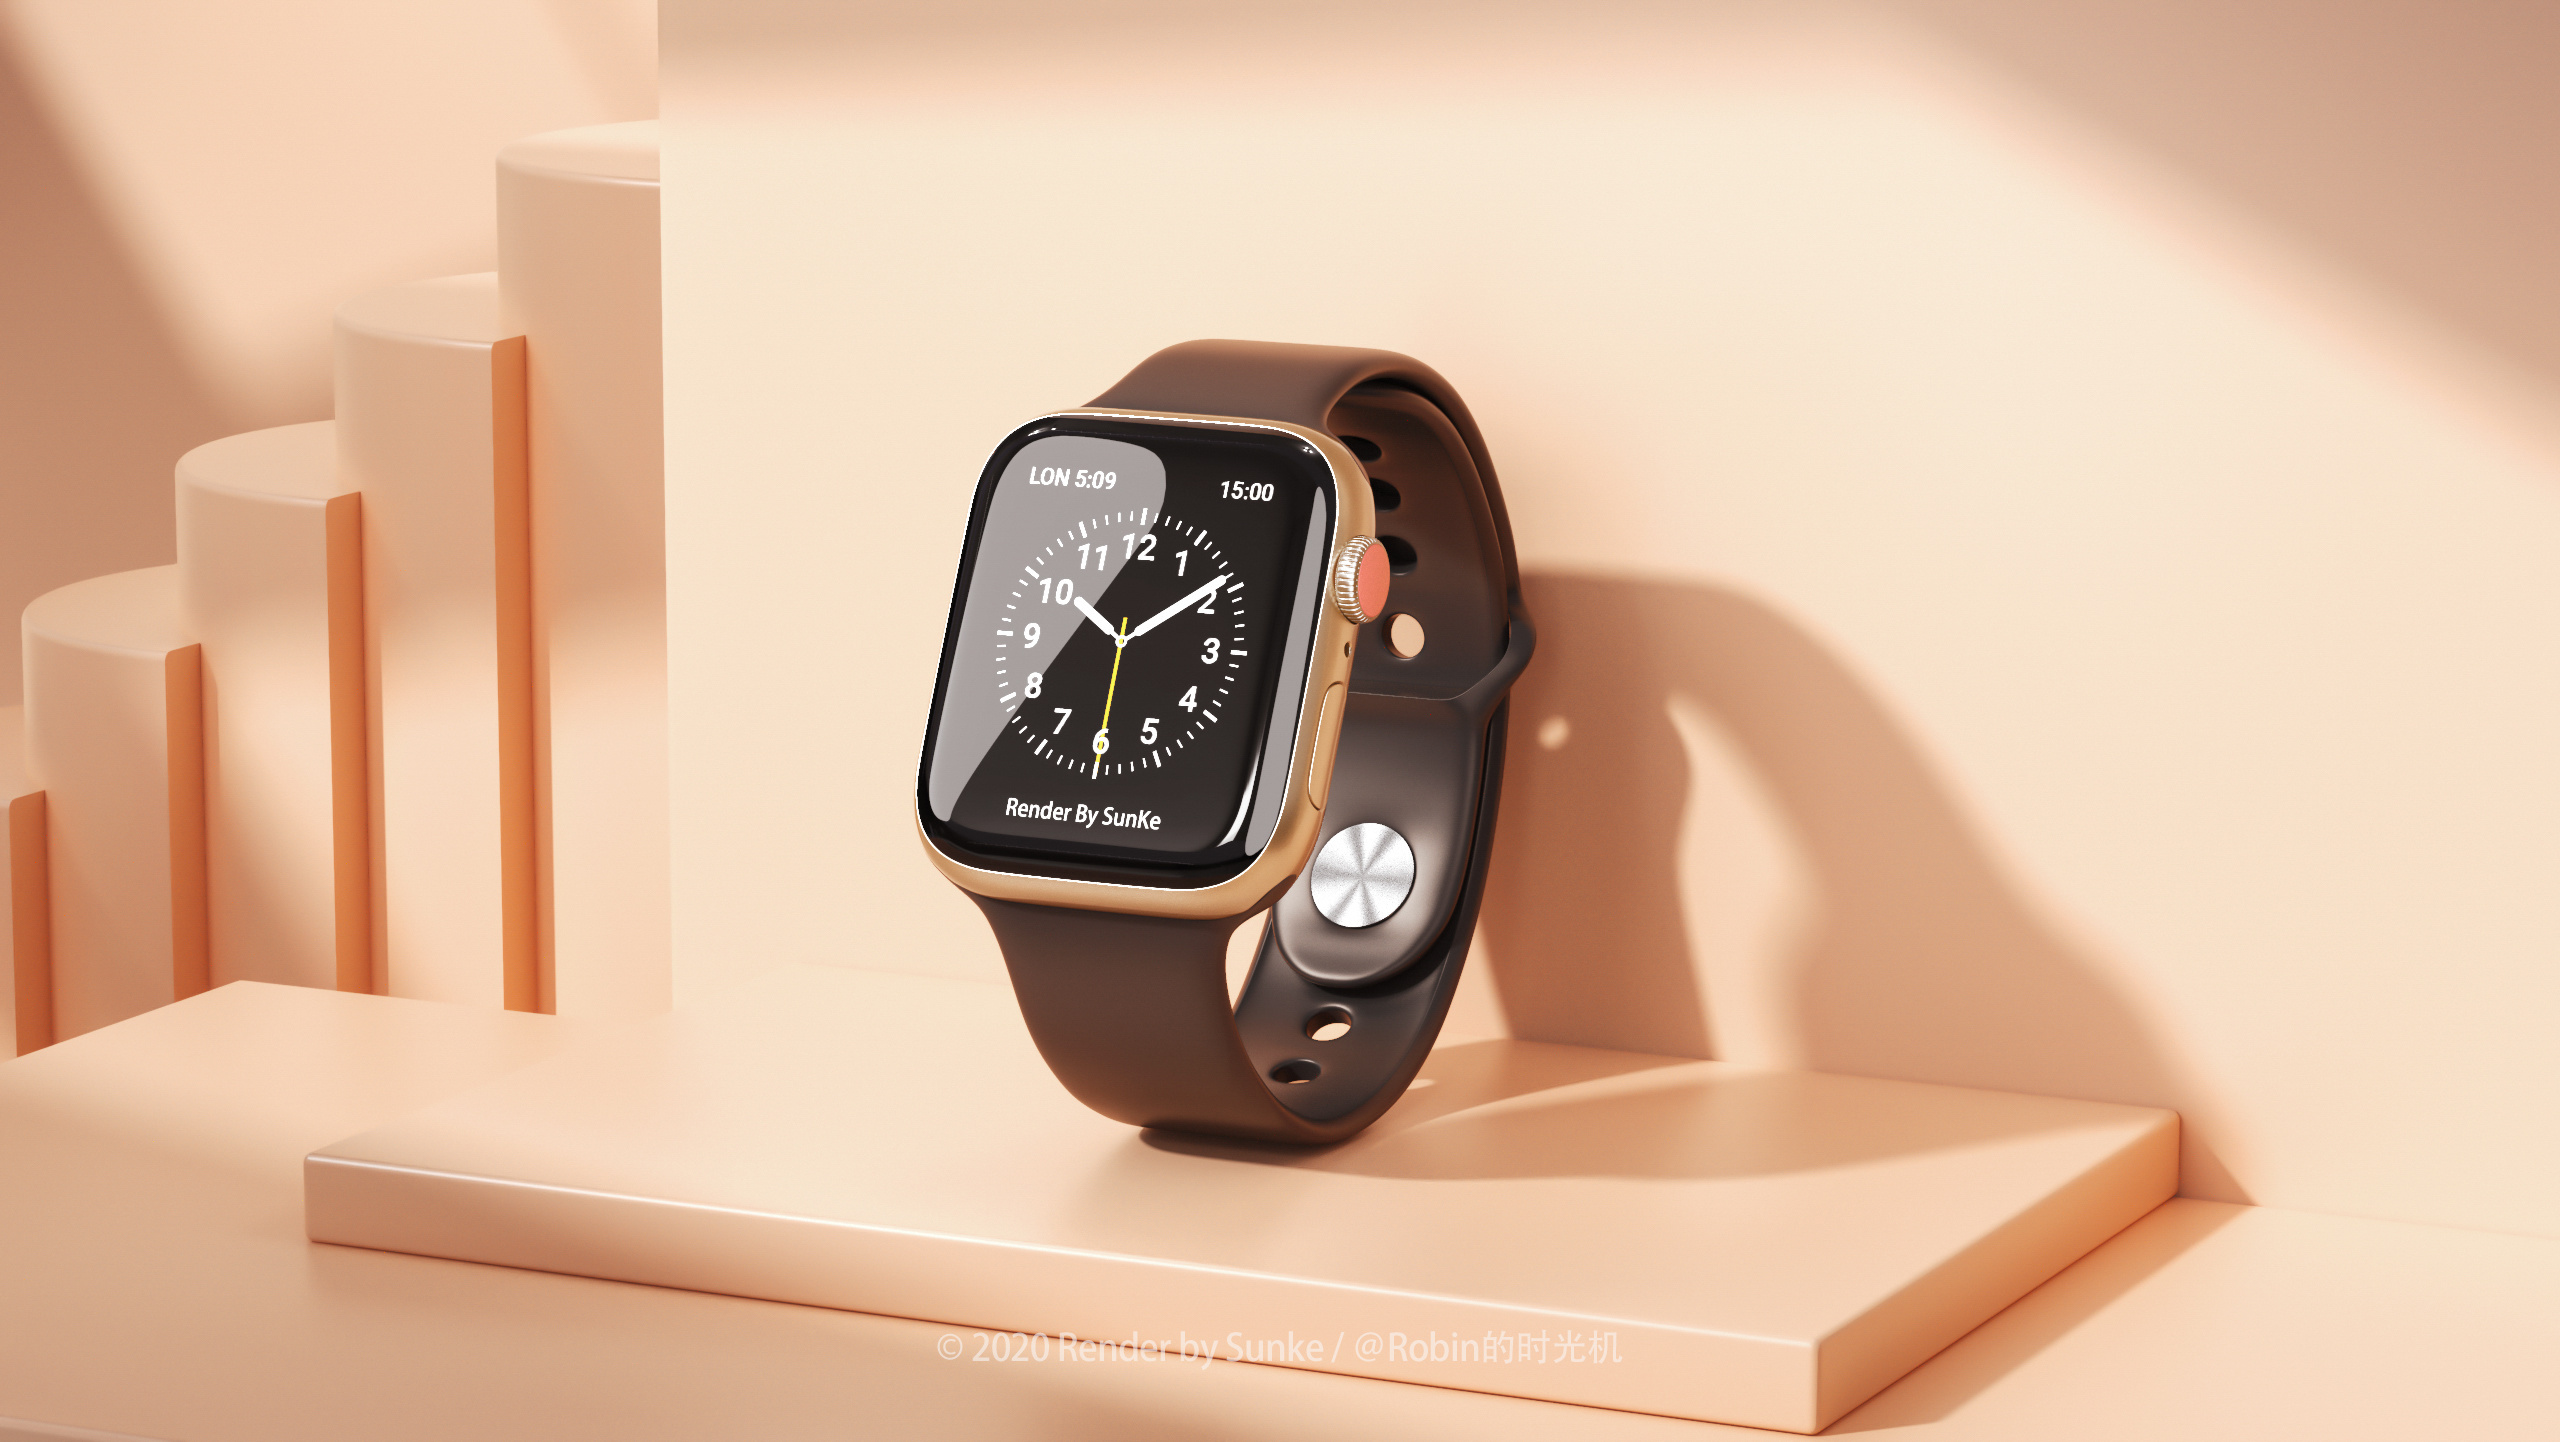 Apple Watch 详细又完整直观的介绍 - 我说吧